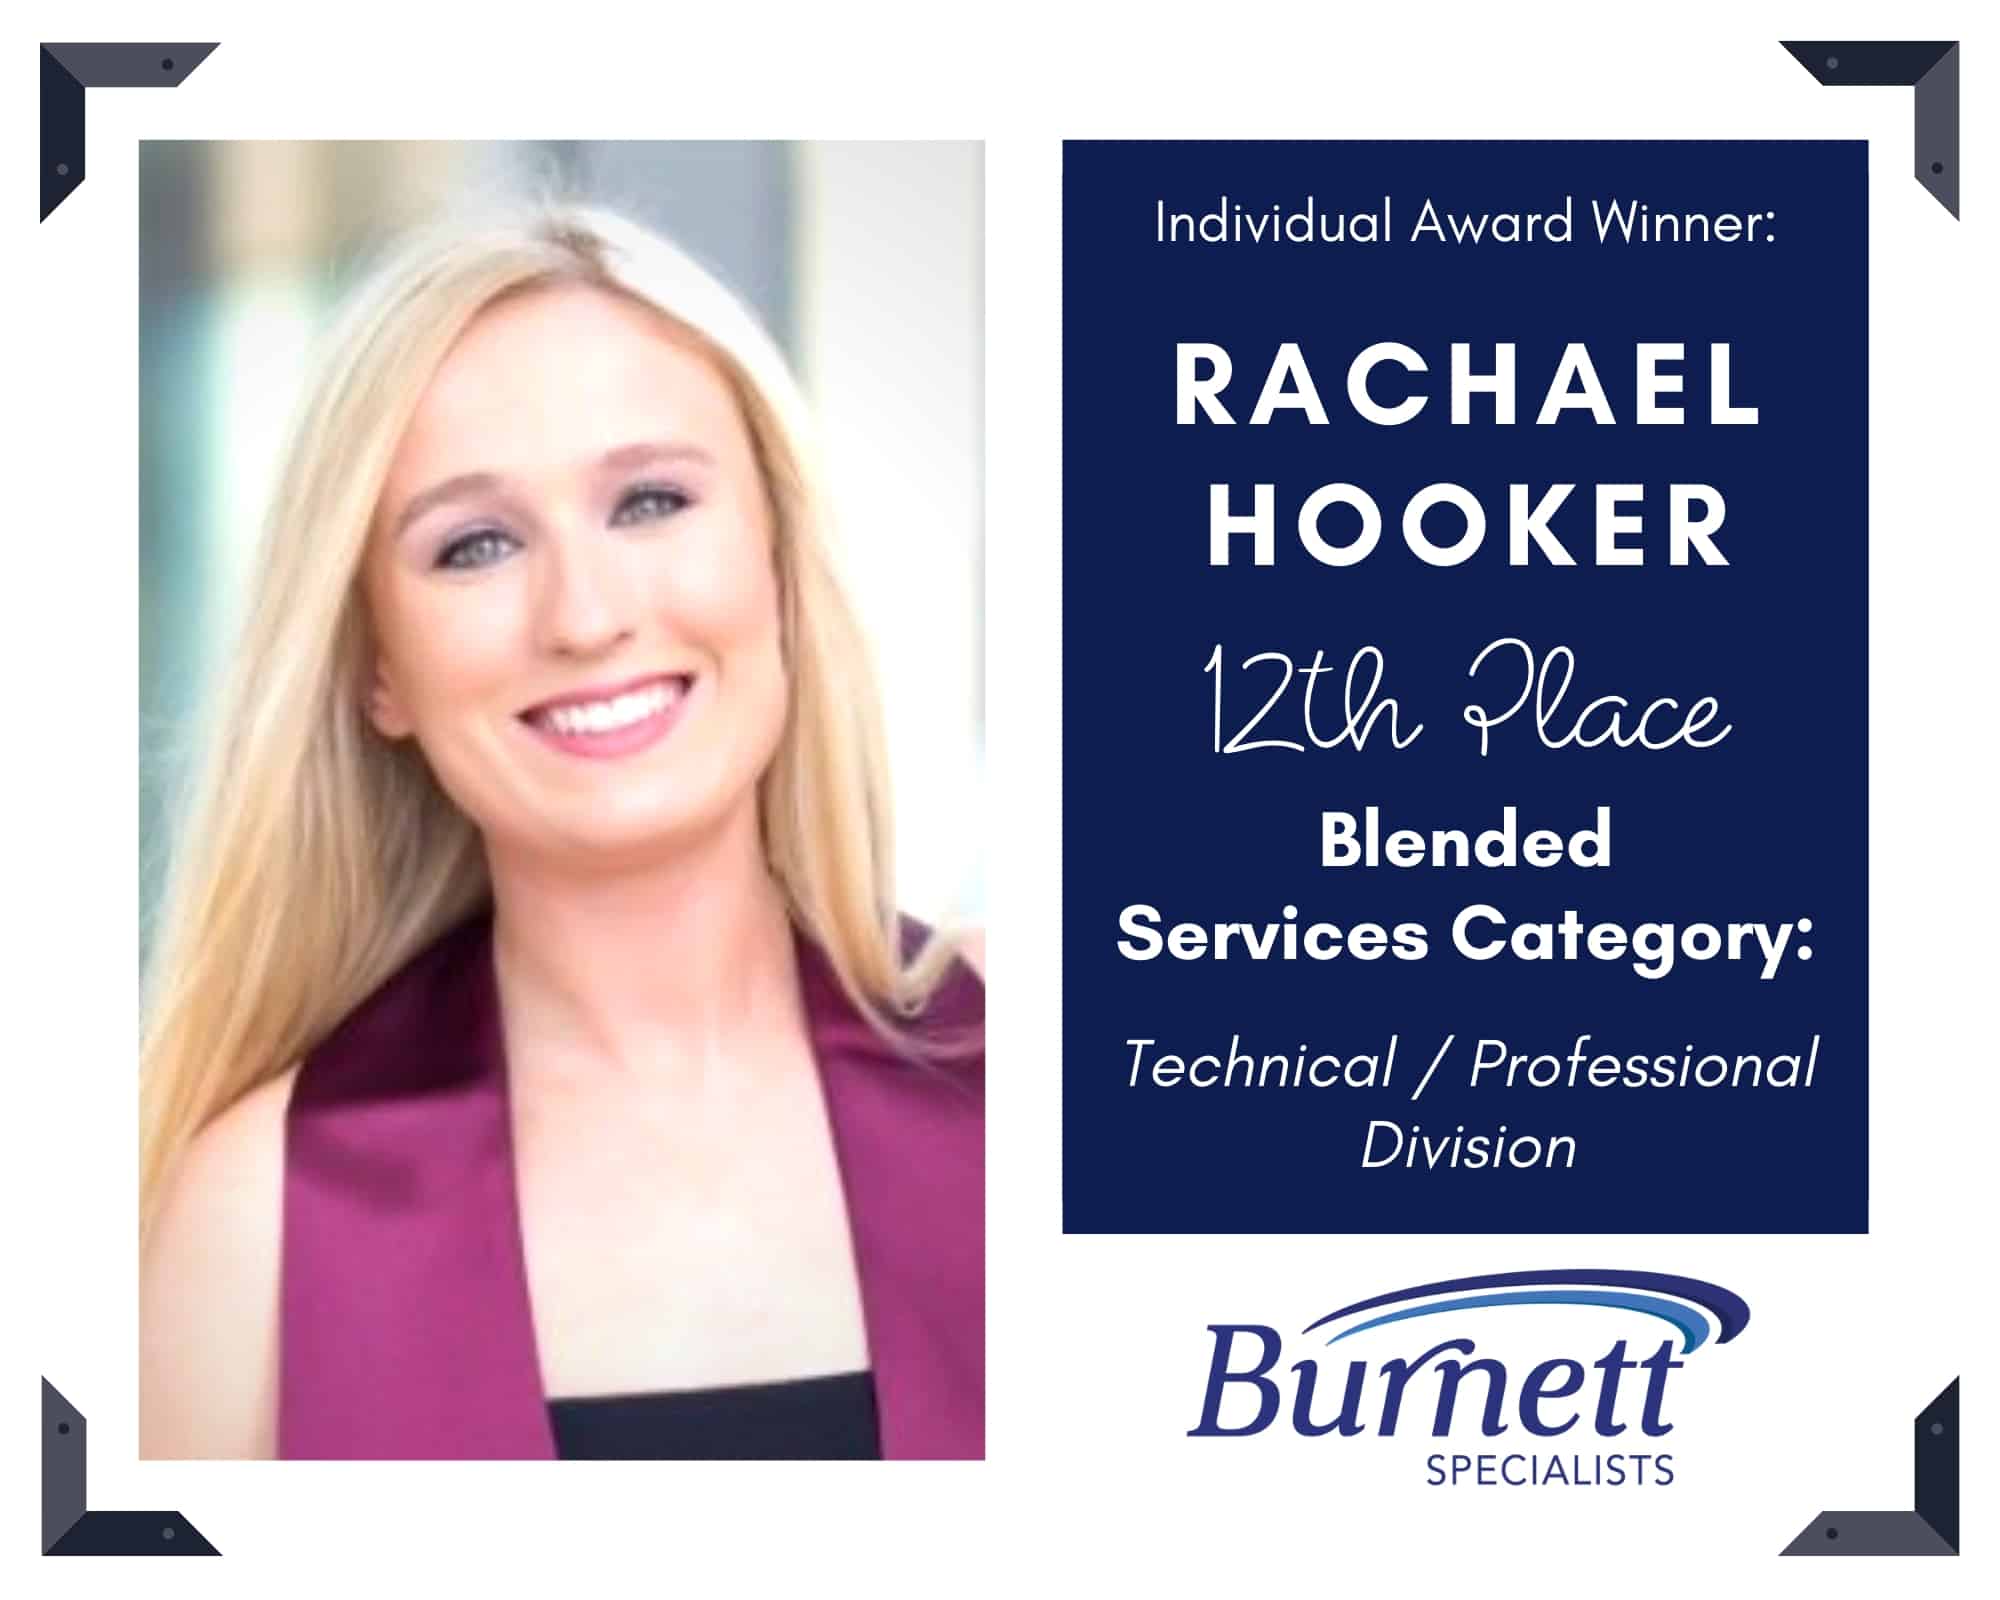 Burnett Recruitment Team Honored at 2019 HAAPC Awards 25